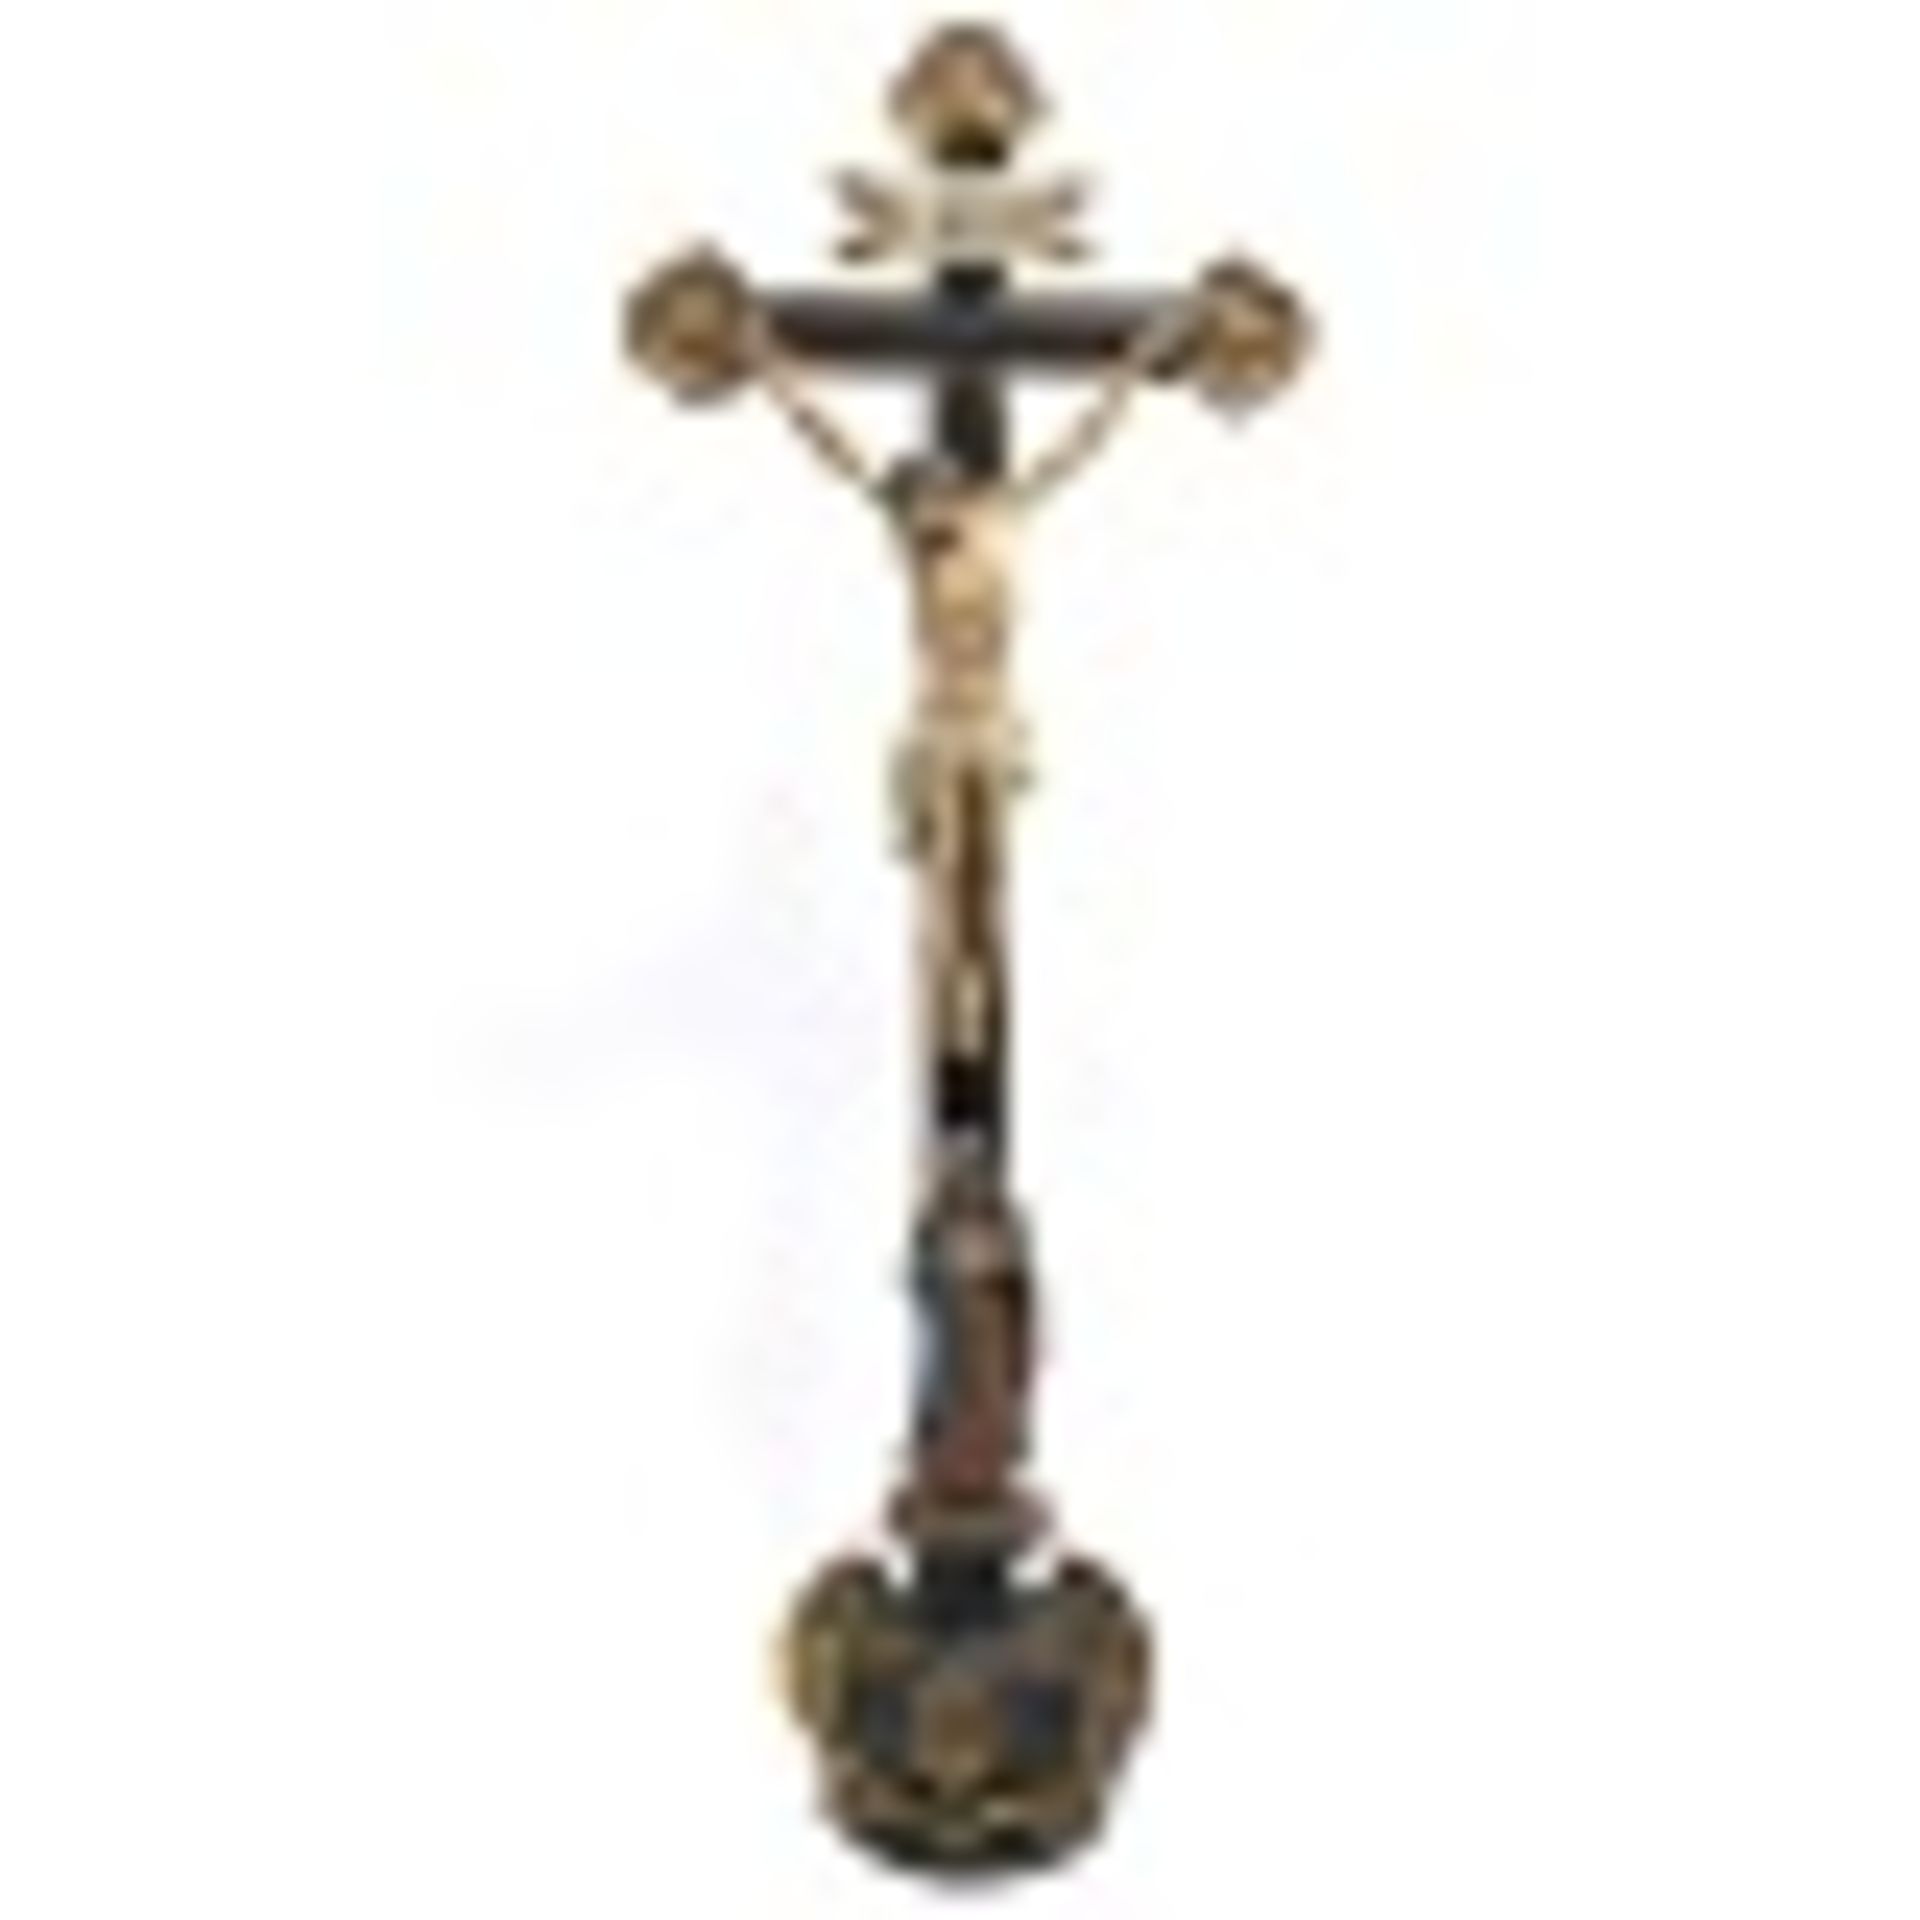 Kruzifix mit trauernder Muttergottes Bäuerliche Volkskunst. Holz, geschnitzt, Farb- und Goldfassung.